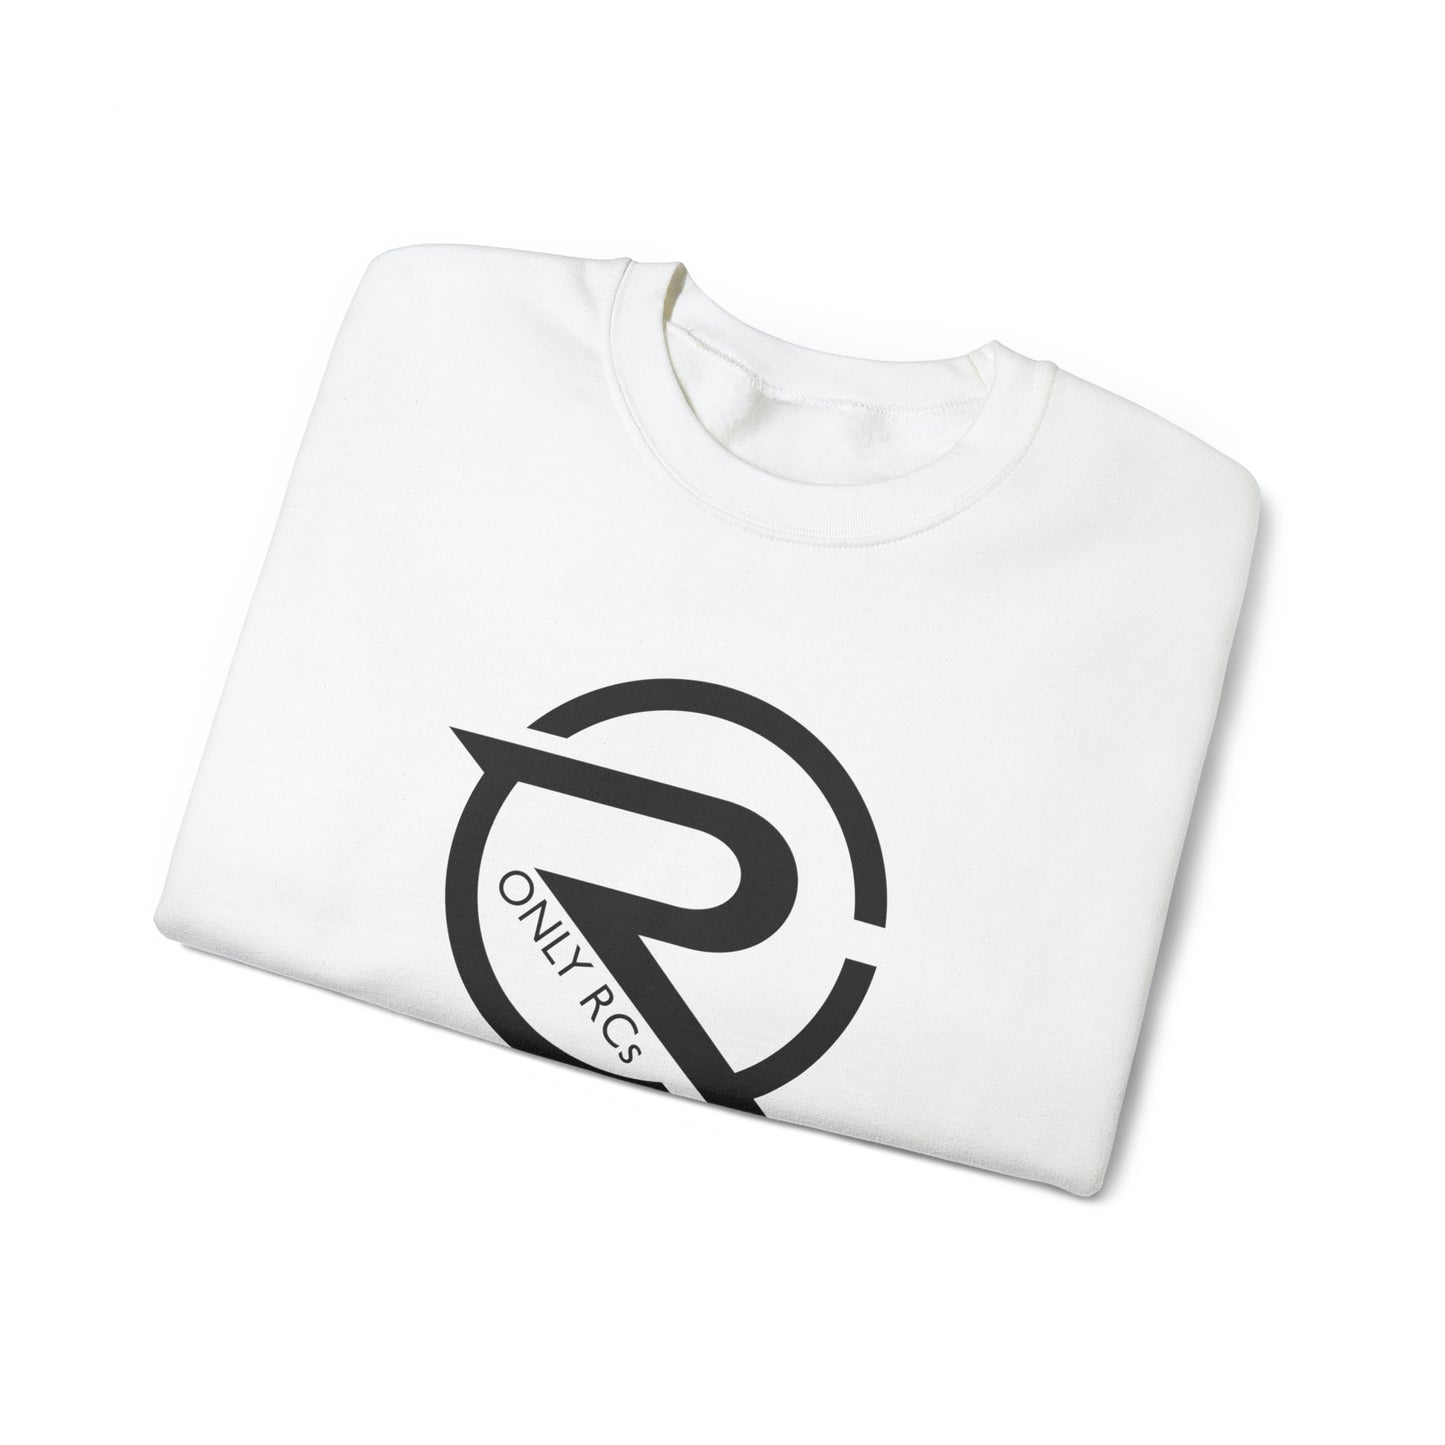 OnlyRCs - OnlyRCs Logo Front and Back Unisex Heavy Blend™ Crewneck Sweatshirt - Series 1